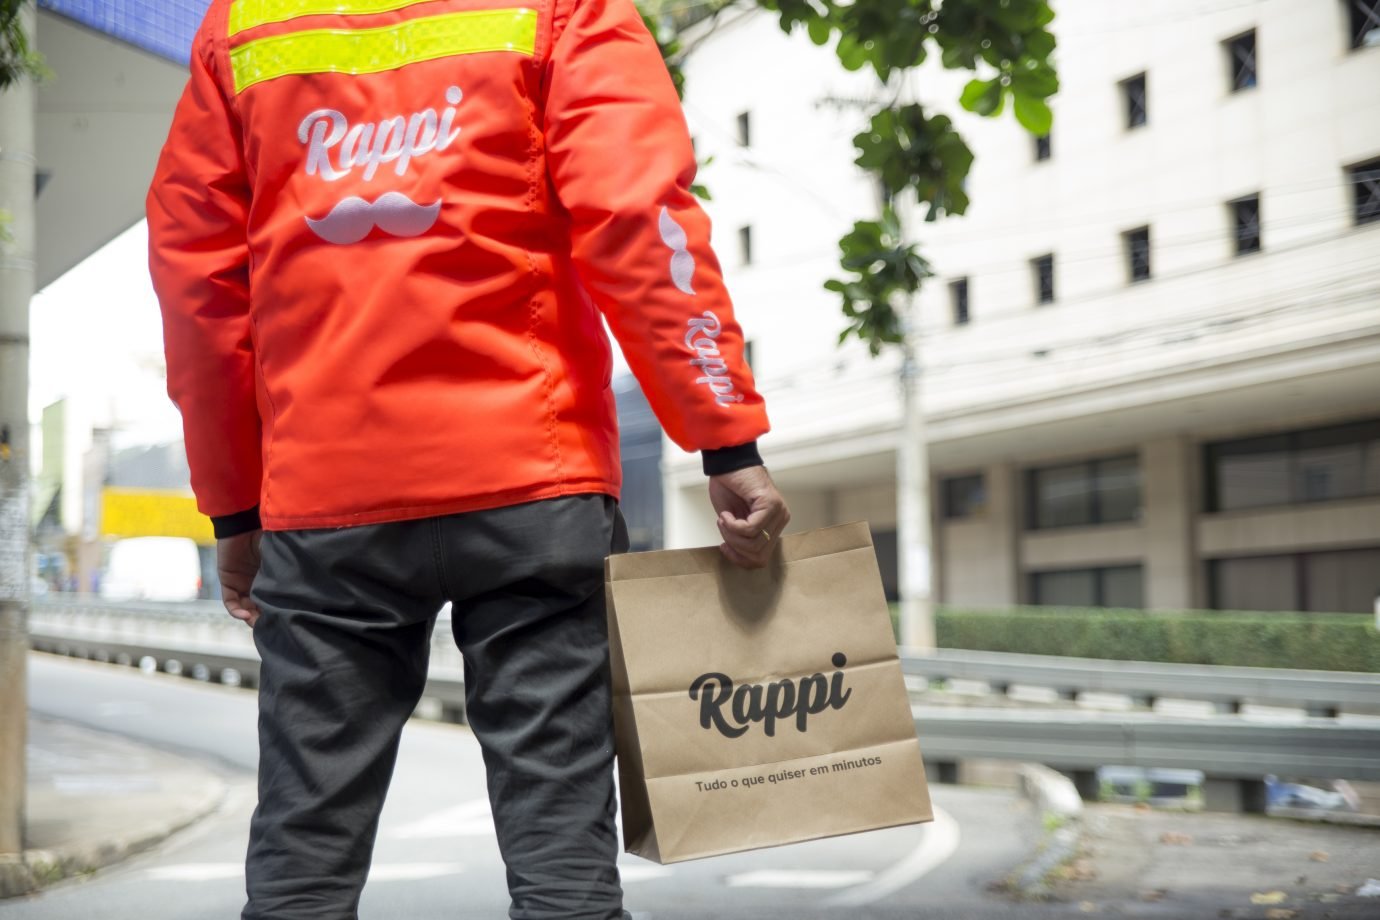 Entregador da Rappi com jaqueta da empresa segura uma sacola de papel, com o logo da Rappi.